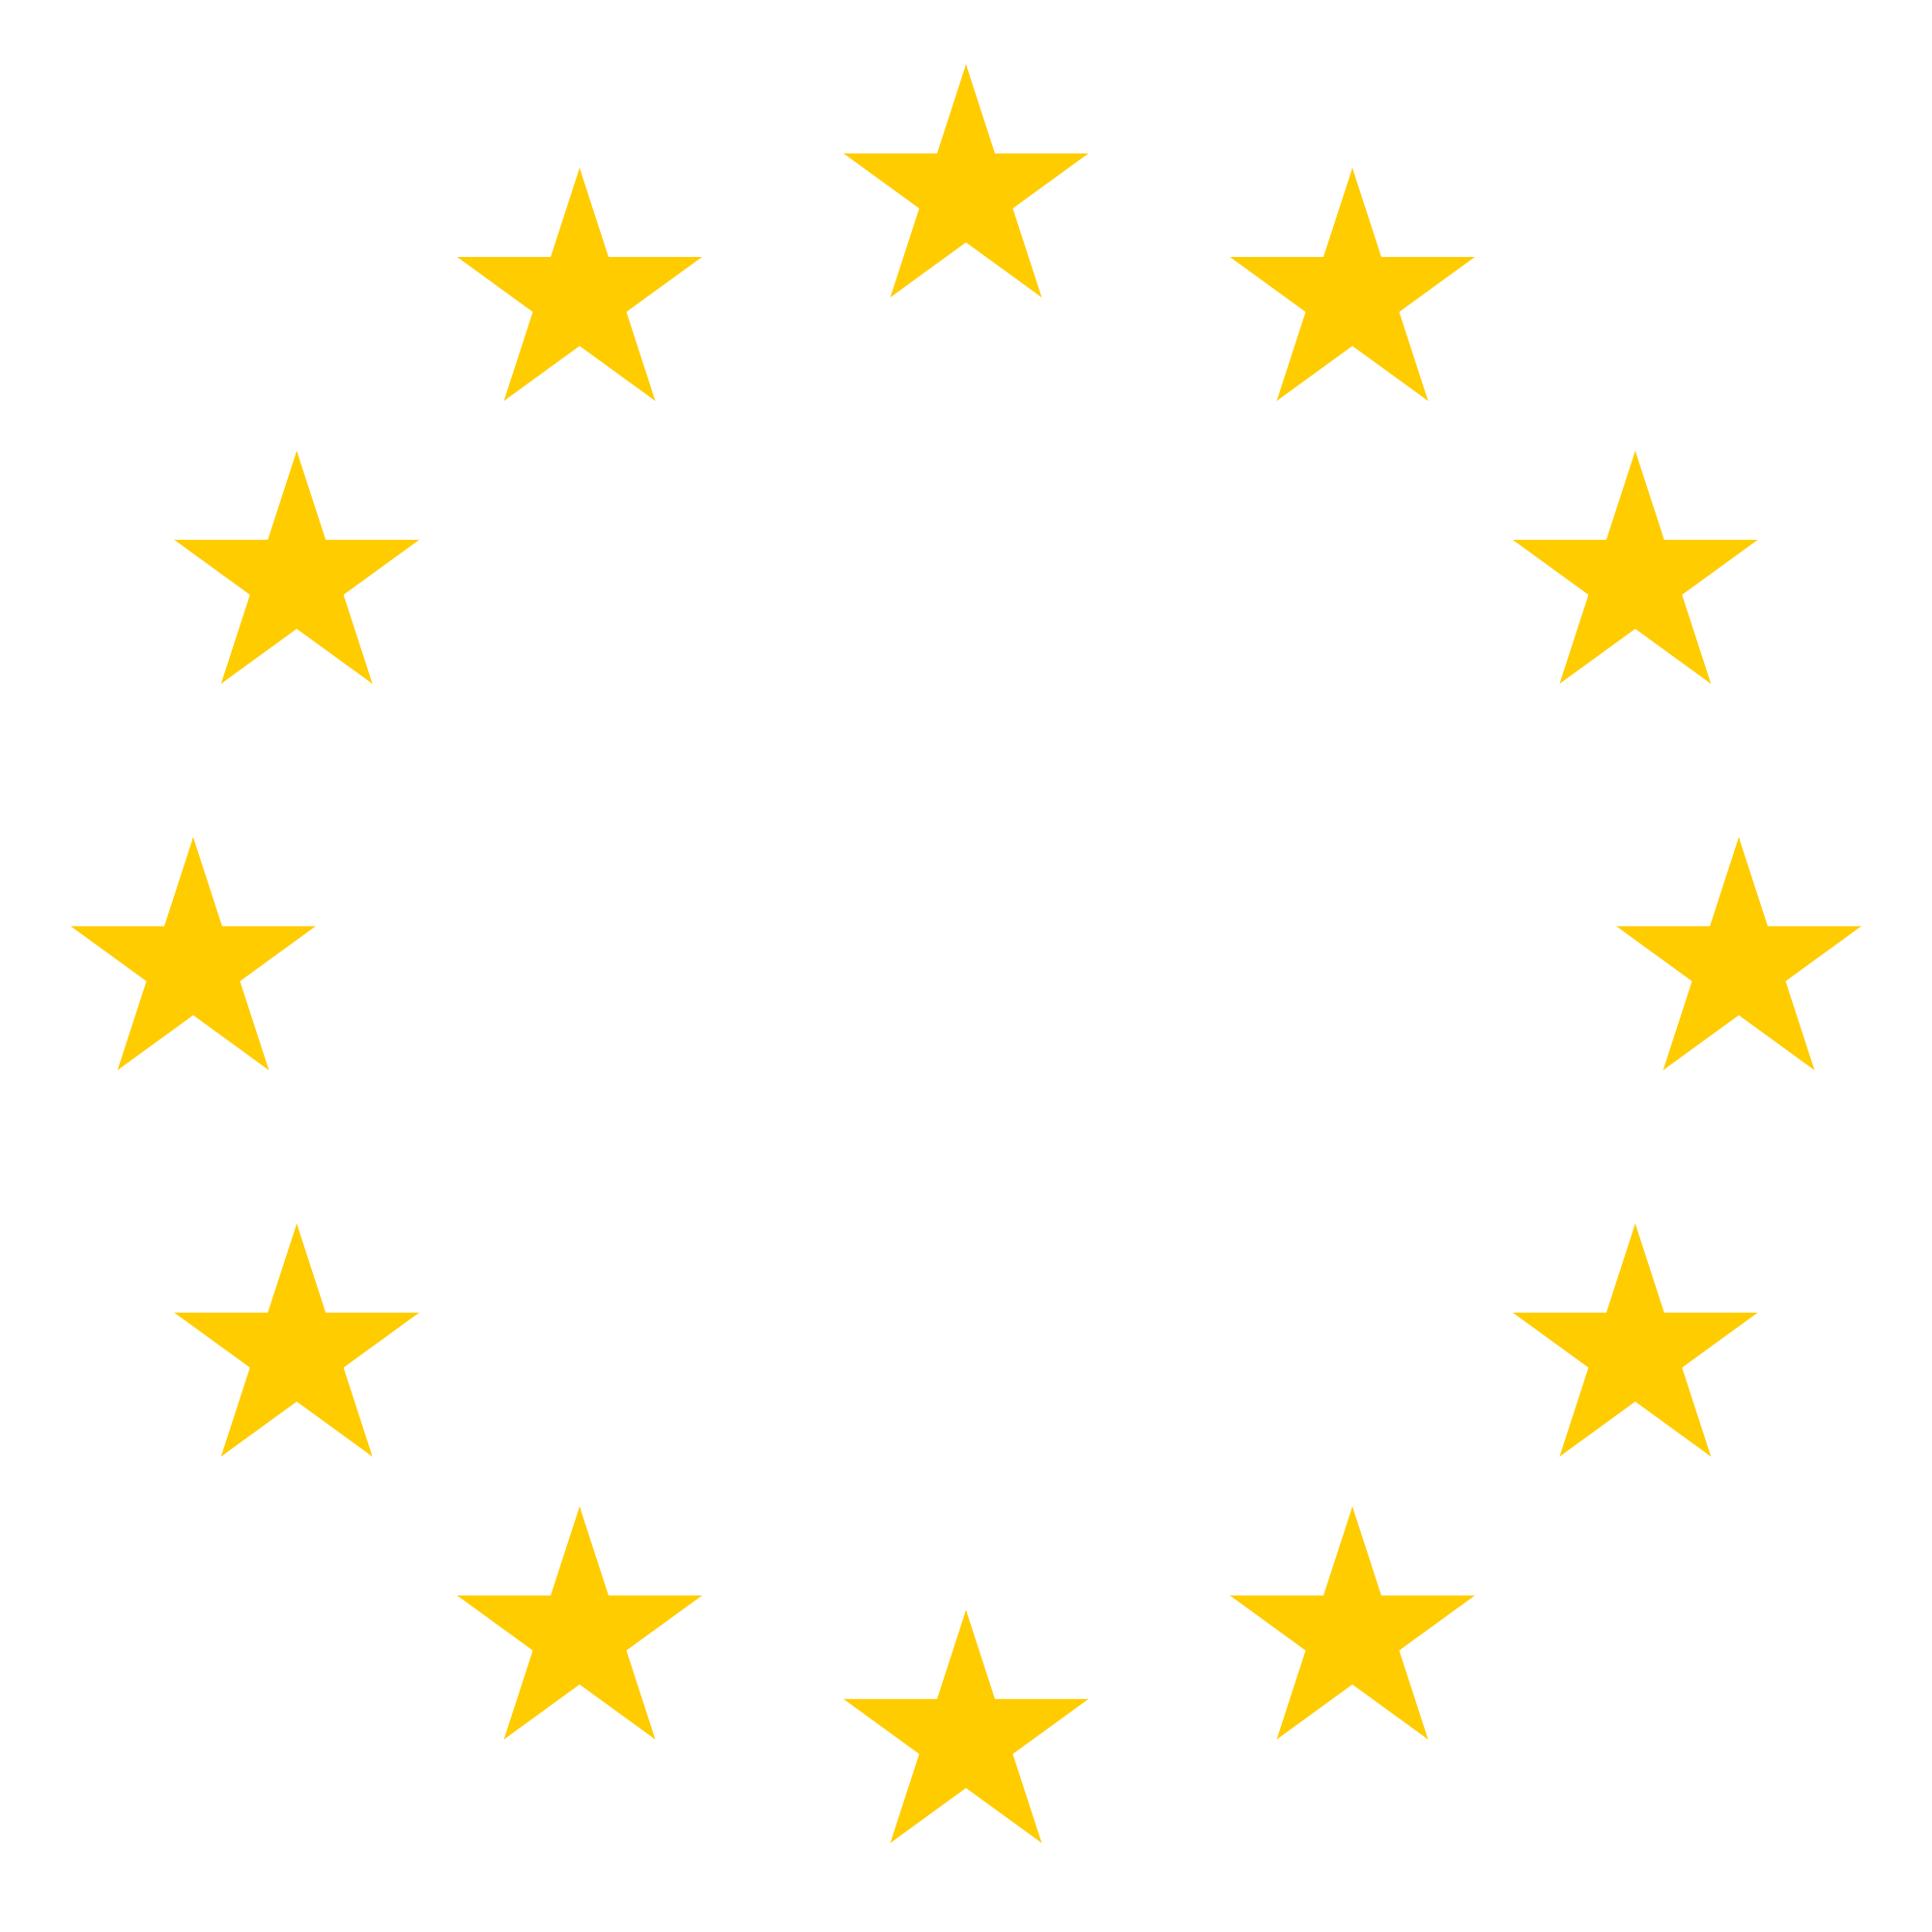 Europee